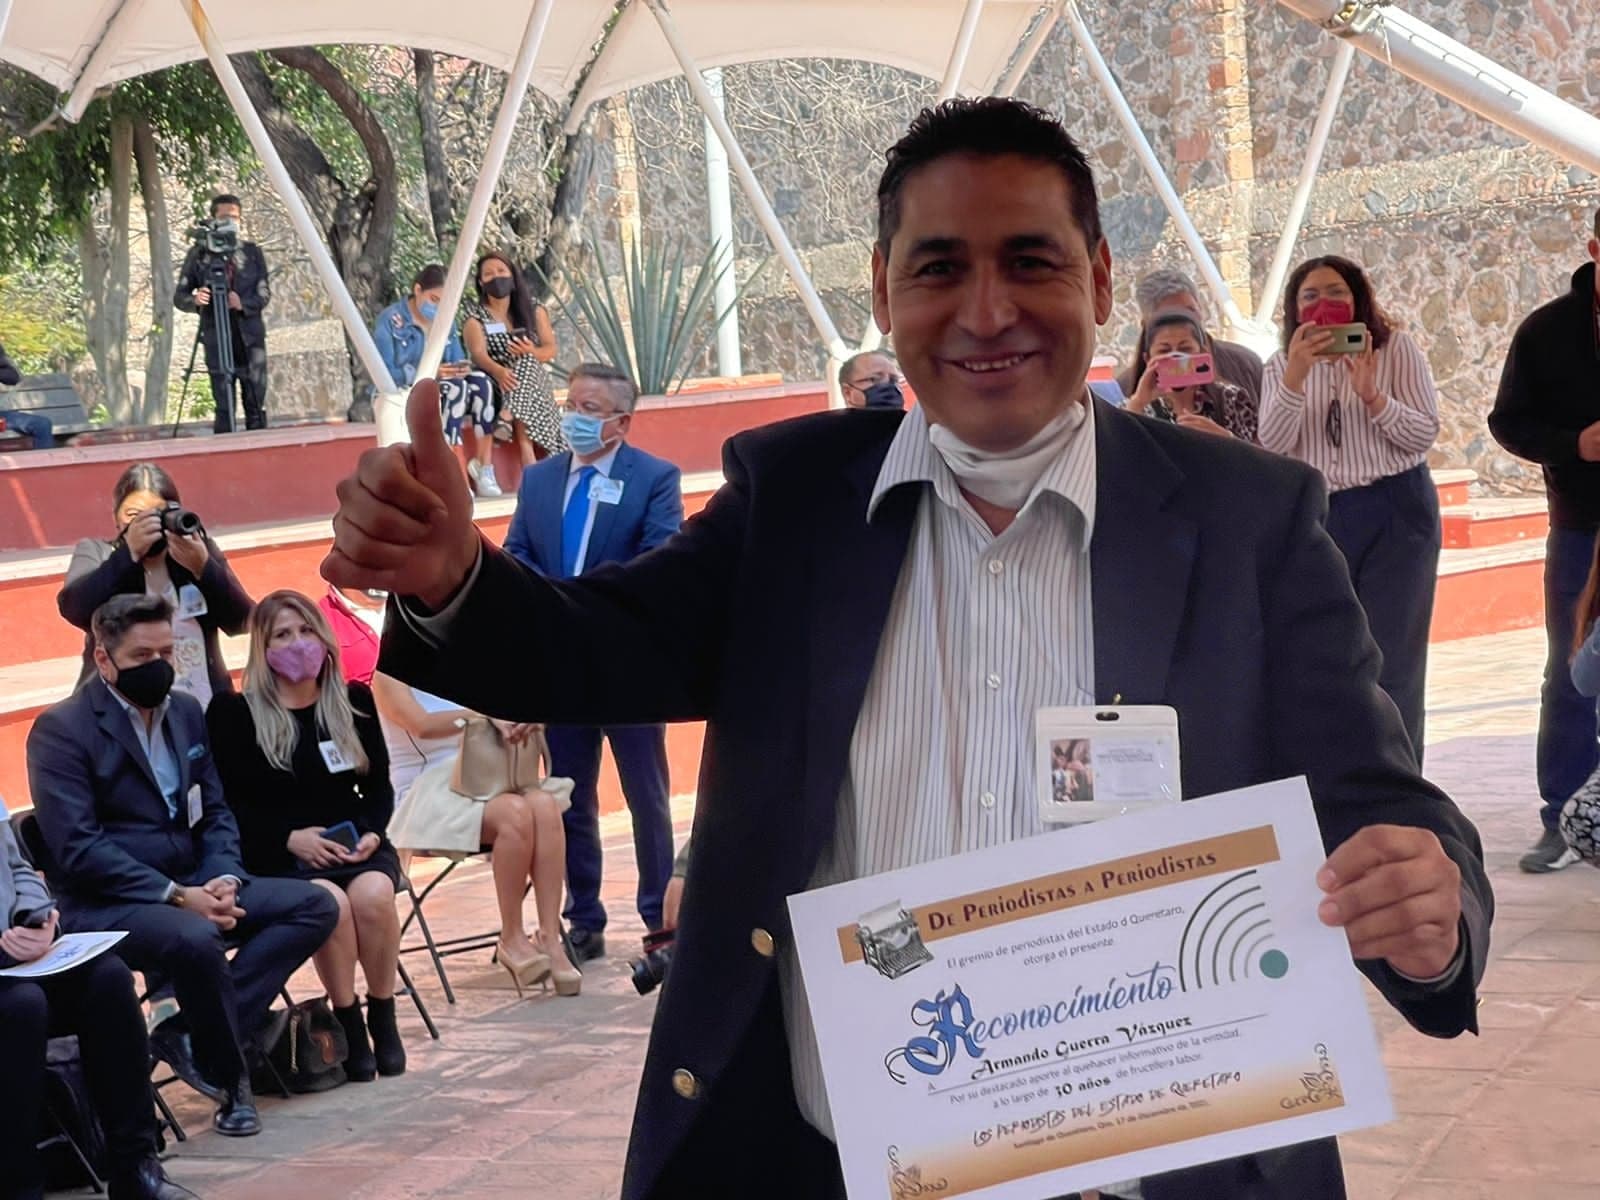 Armando Guerra recibe reconocimiento por 30 años de trayectoria periodística, por parte de Asociación de Periodistas de Querétaro